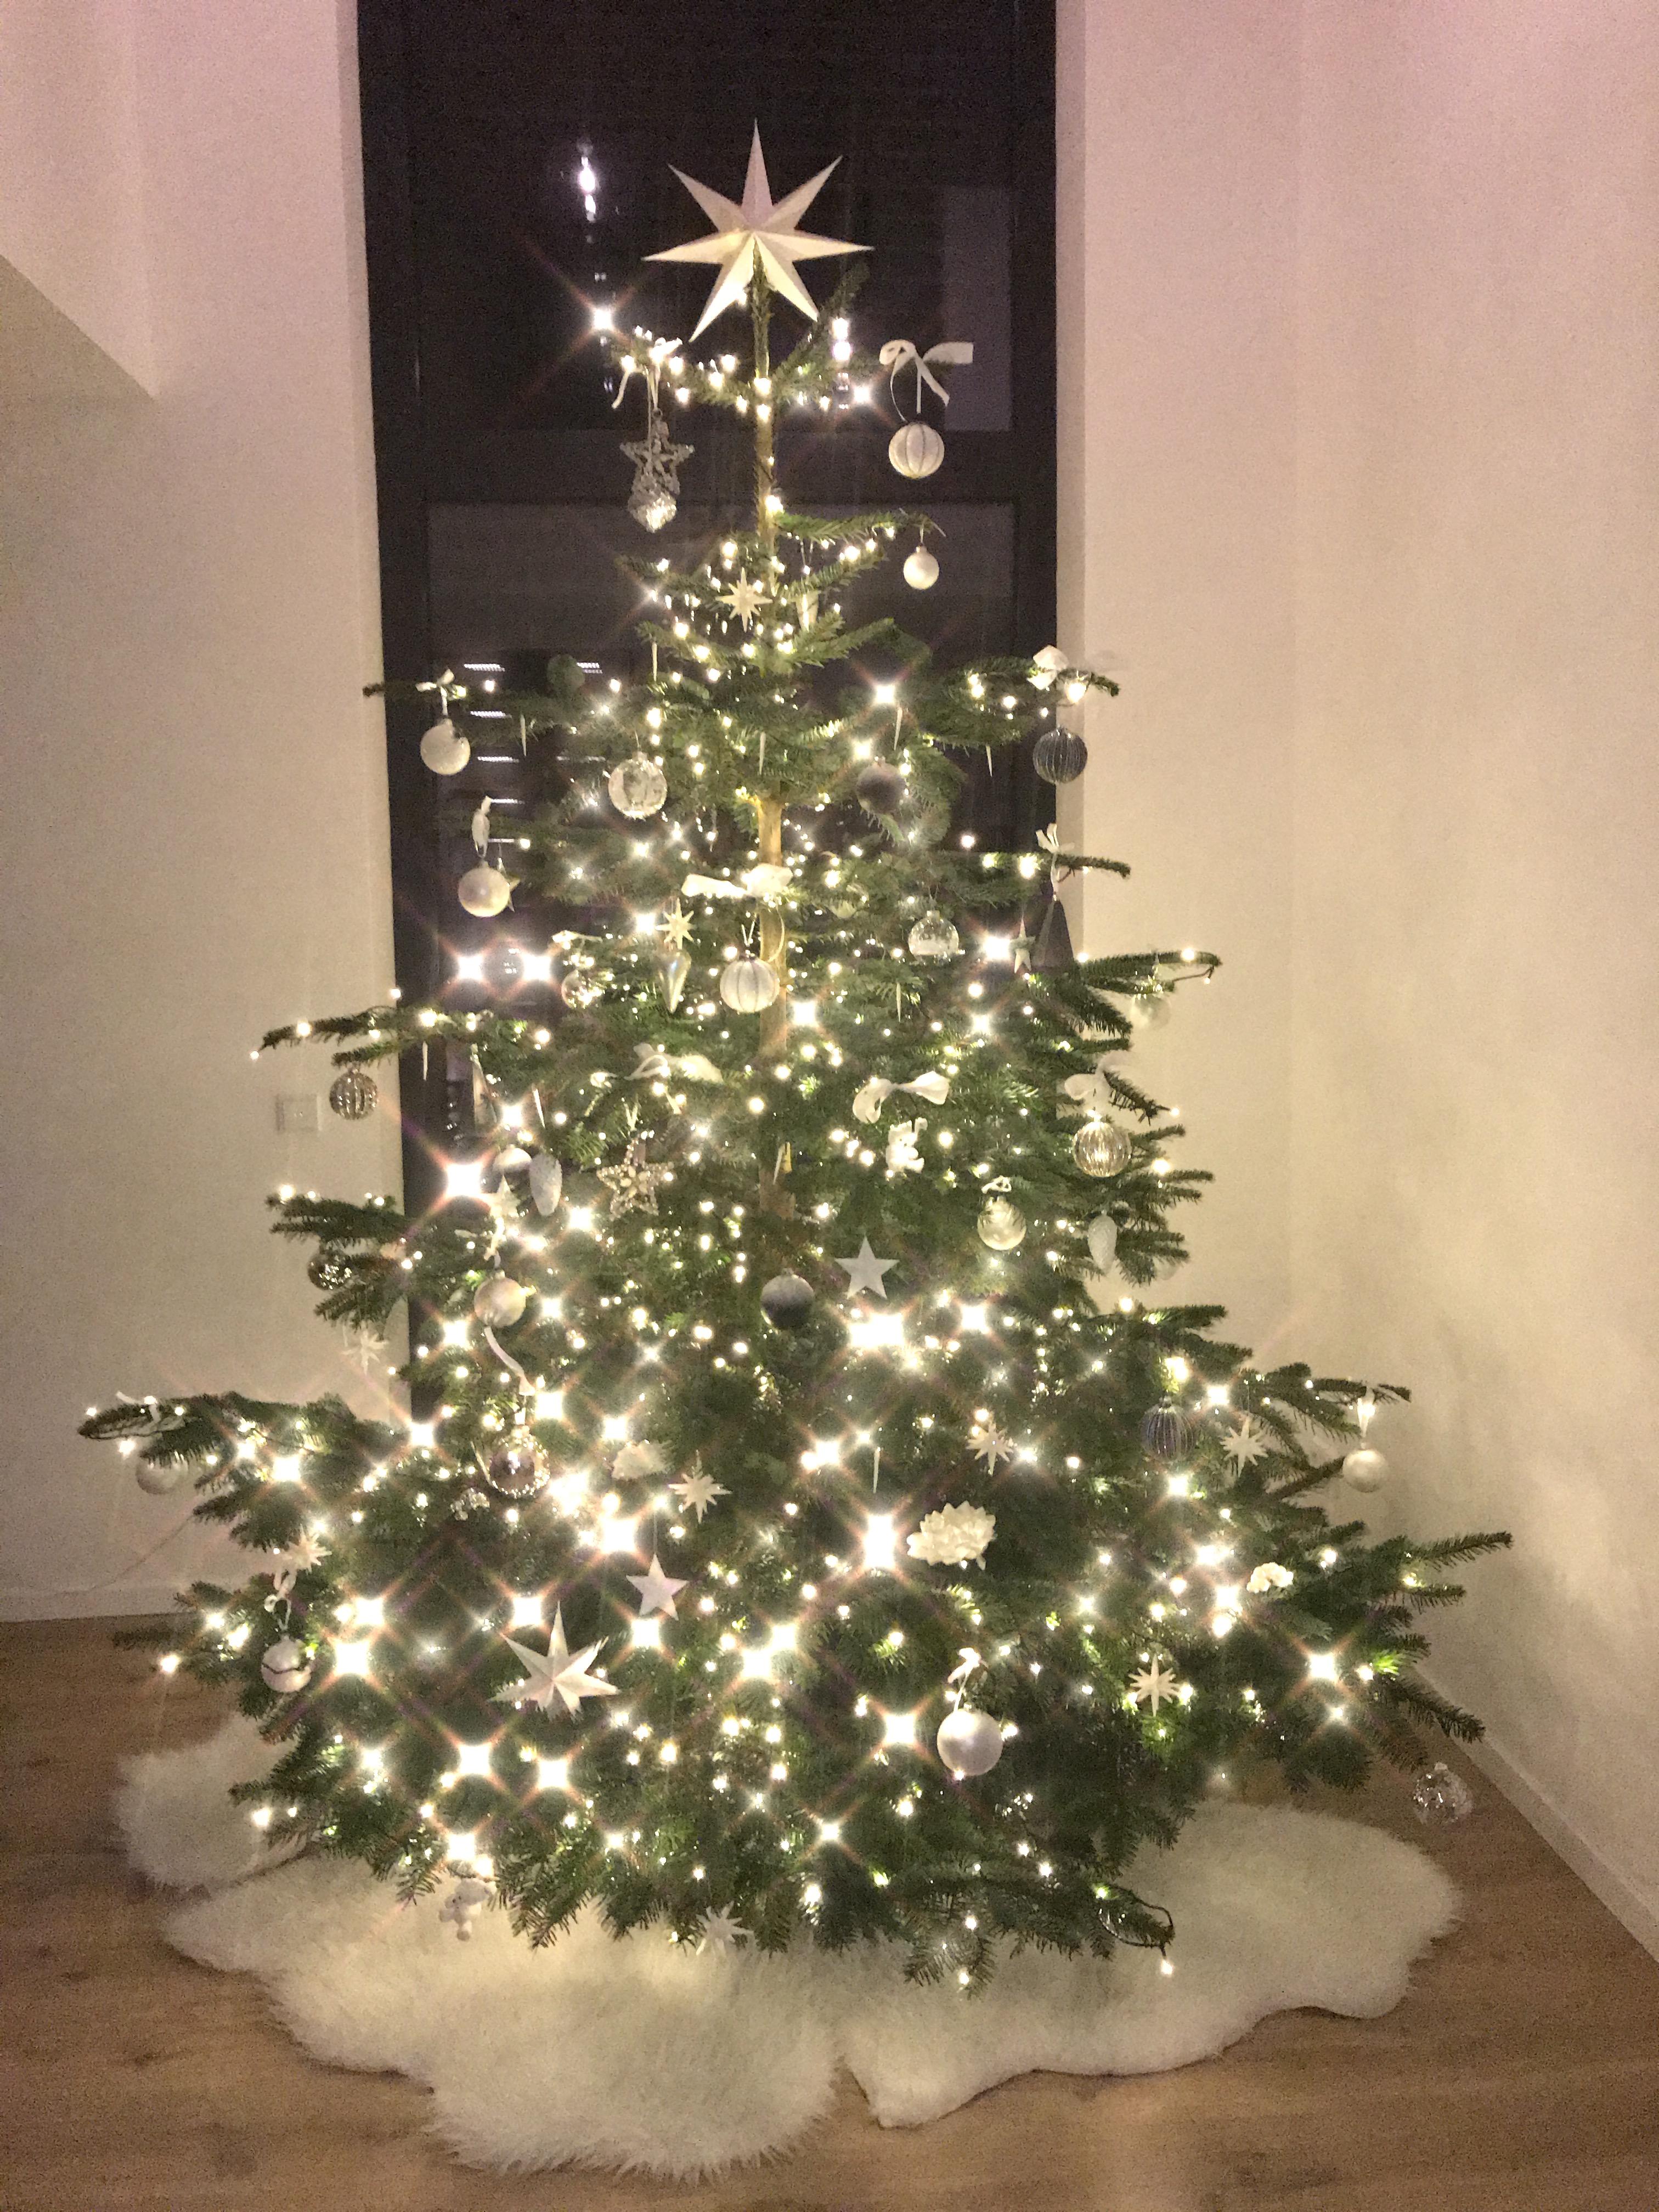 Weihnachtsbaum 2017 
#weihnachtsbaum #christbaum #xmas #weihnachten